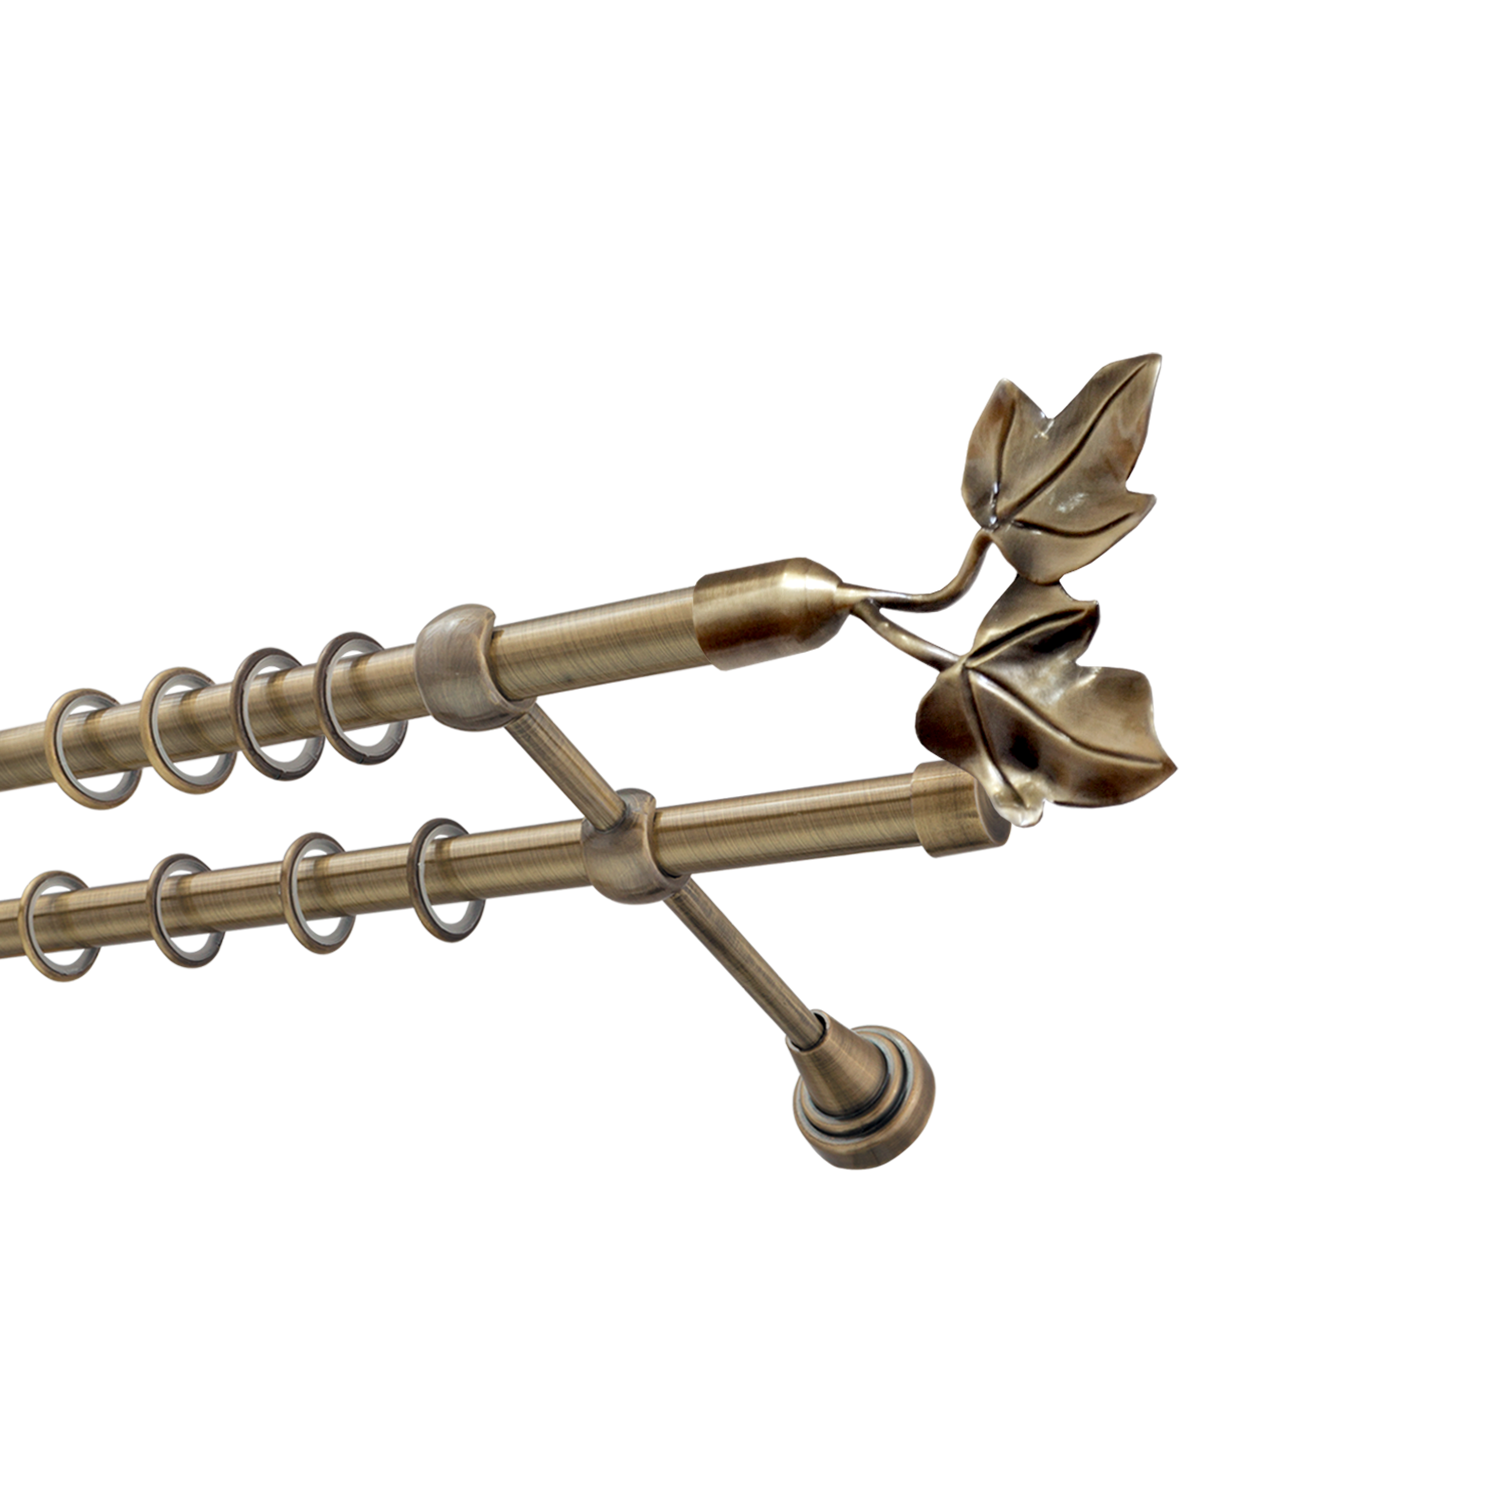 Металлический карниз для штор Листья, двухрядный 16/16 мм, бронза, гладкая штанга, длина 240 см - фото Wikidecor.ru